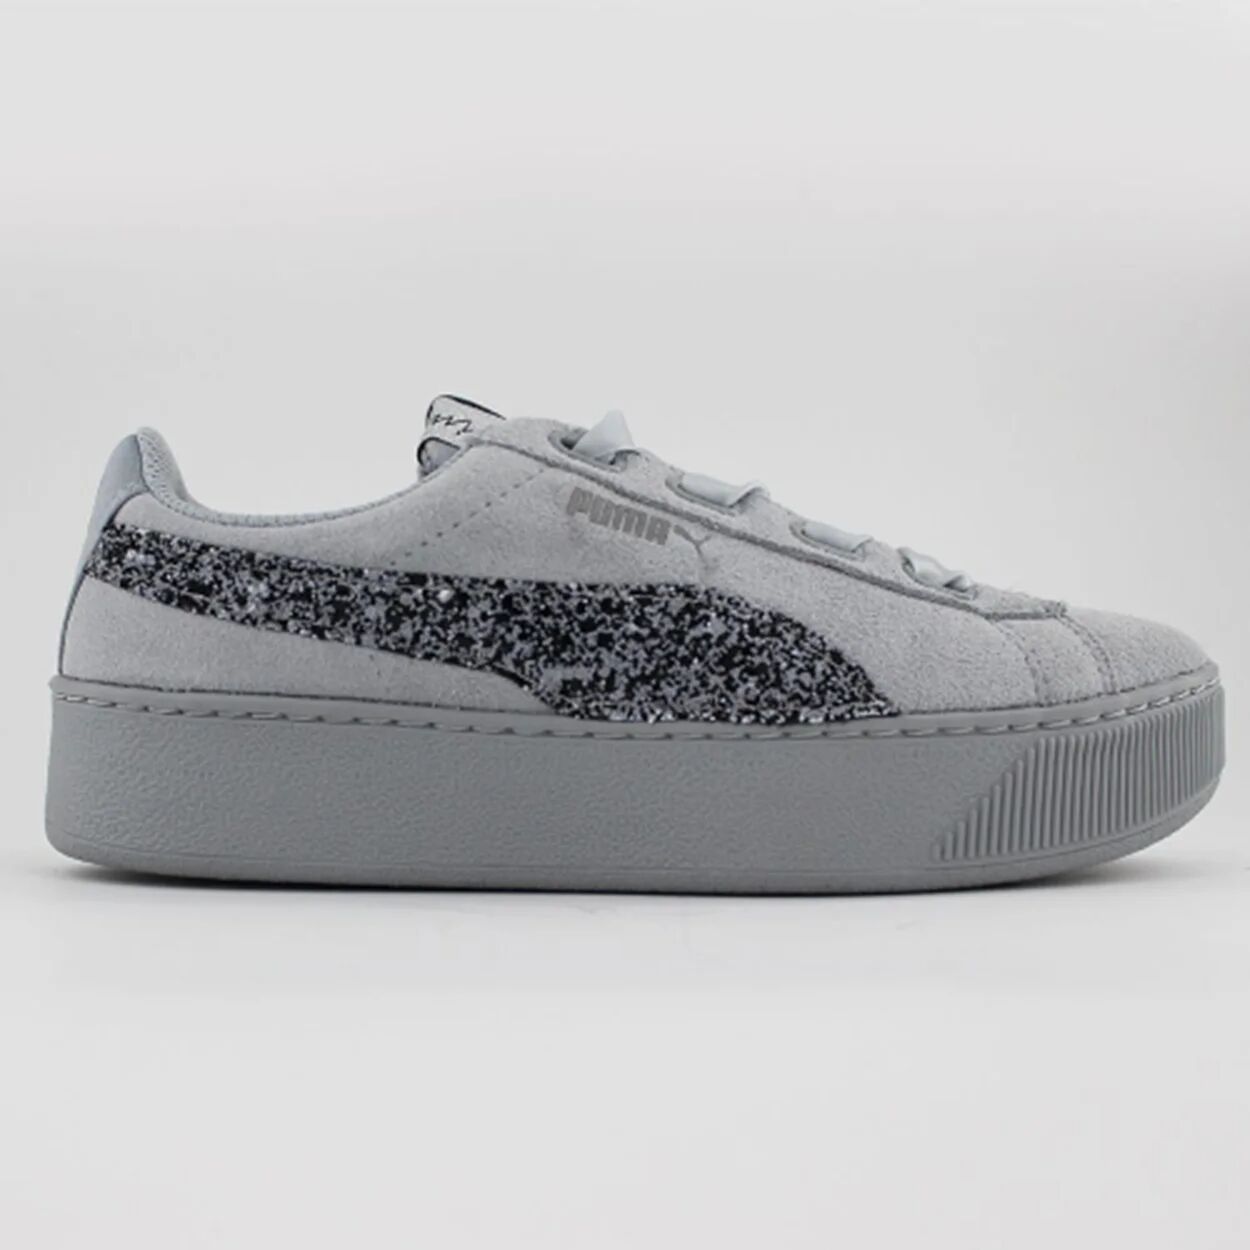 Mimanera PUMA Sneakers in suede con inserti glitter grigie